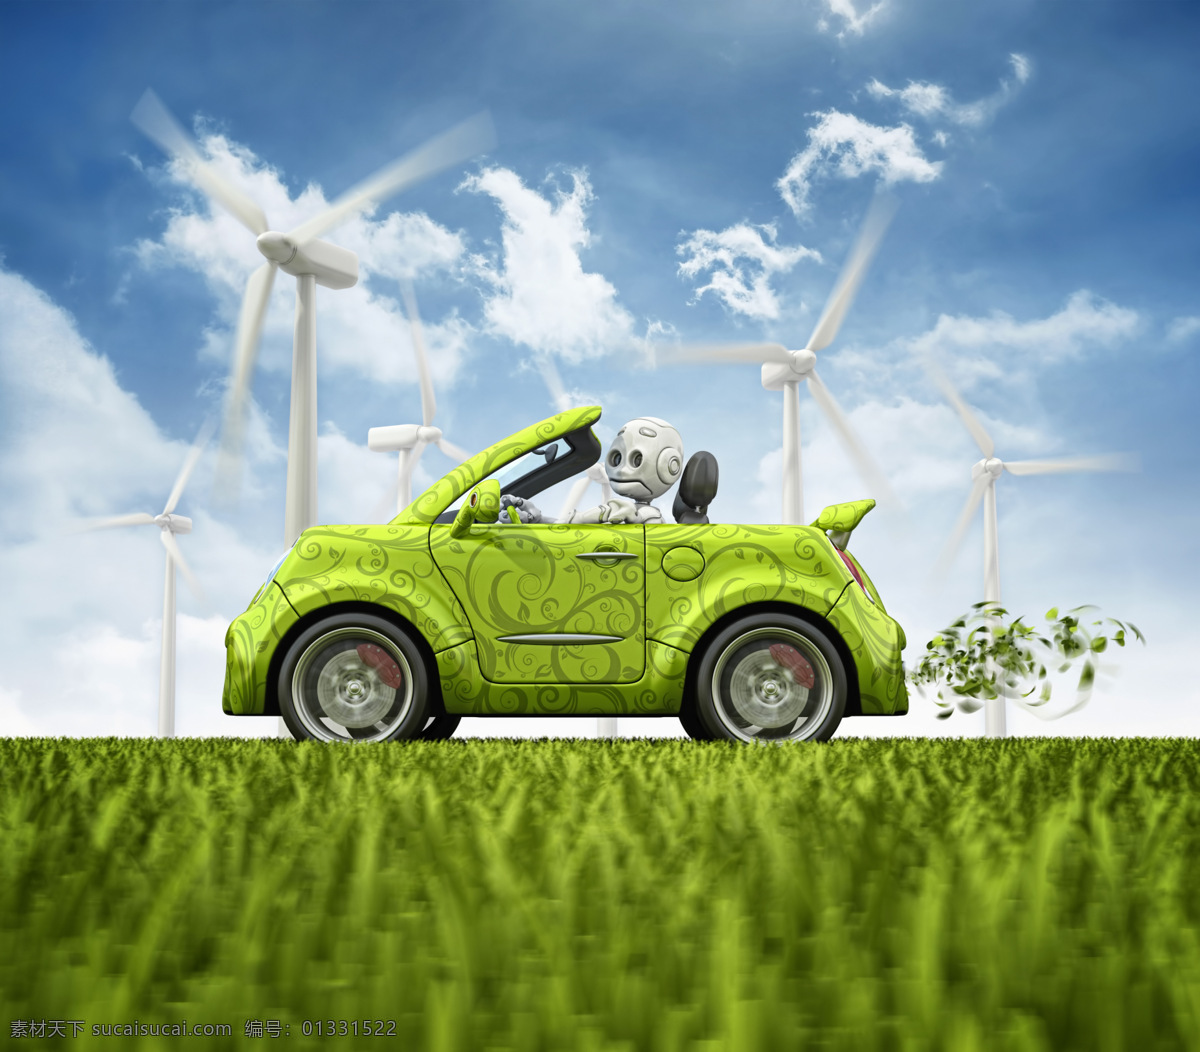 创意 创意环保 风车 风力 环保 蓝天白云 汽车 自然风光 自然风景 自然景观 设计素材 模板下载 天然景色 风力发电车